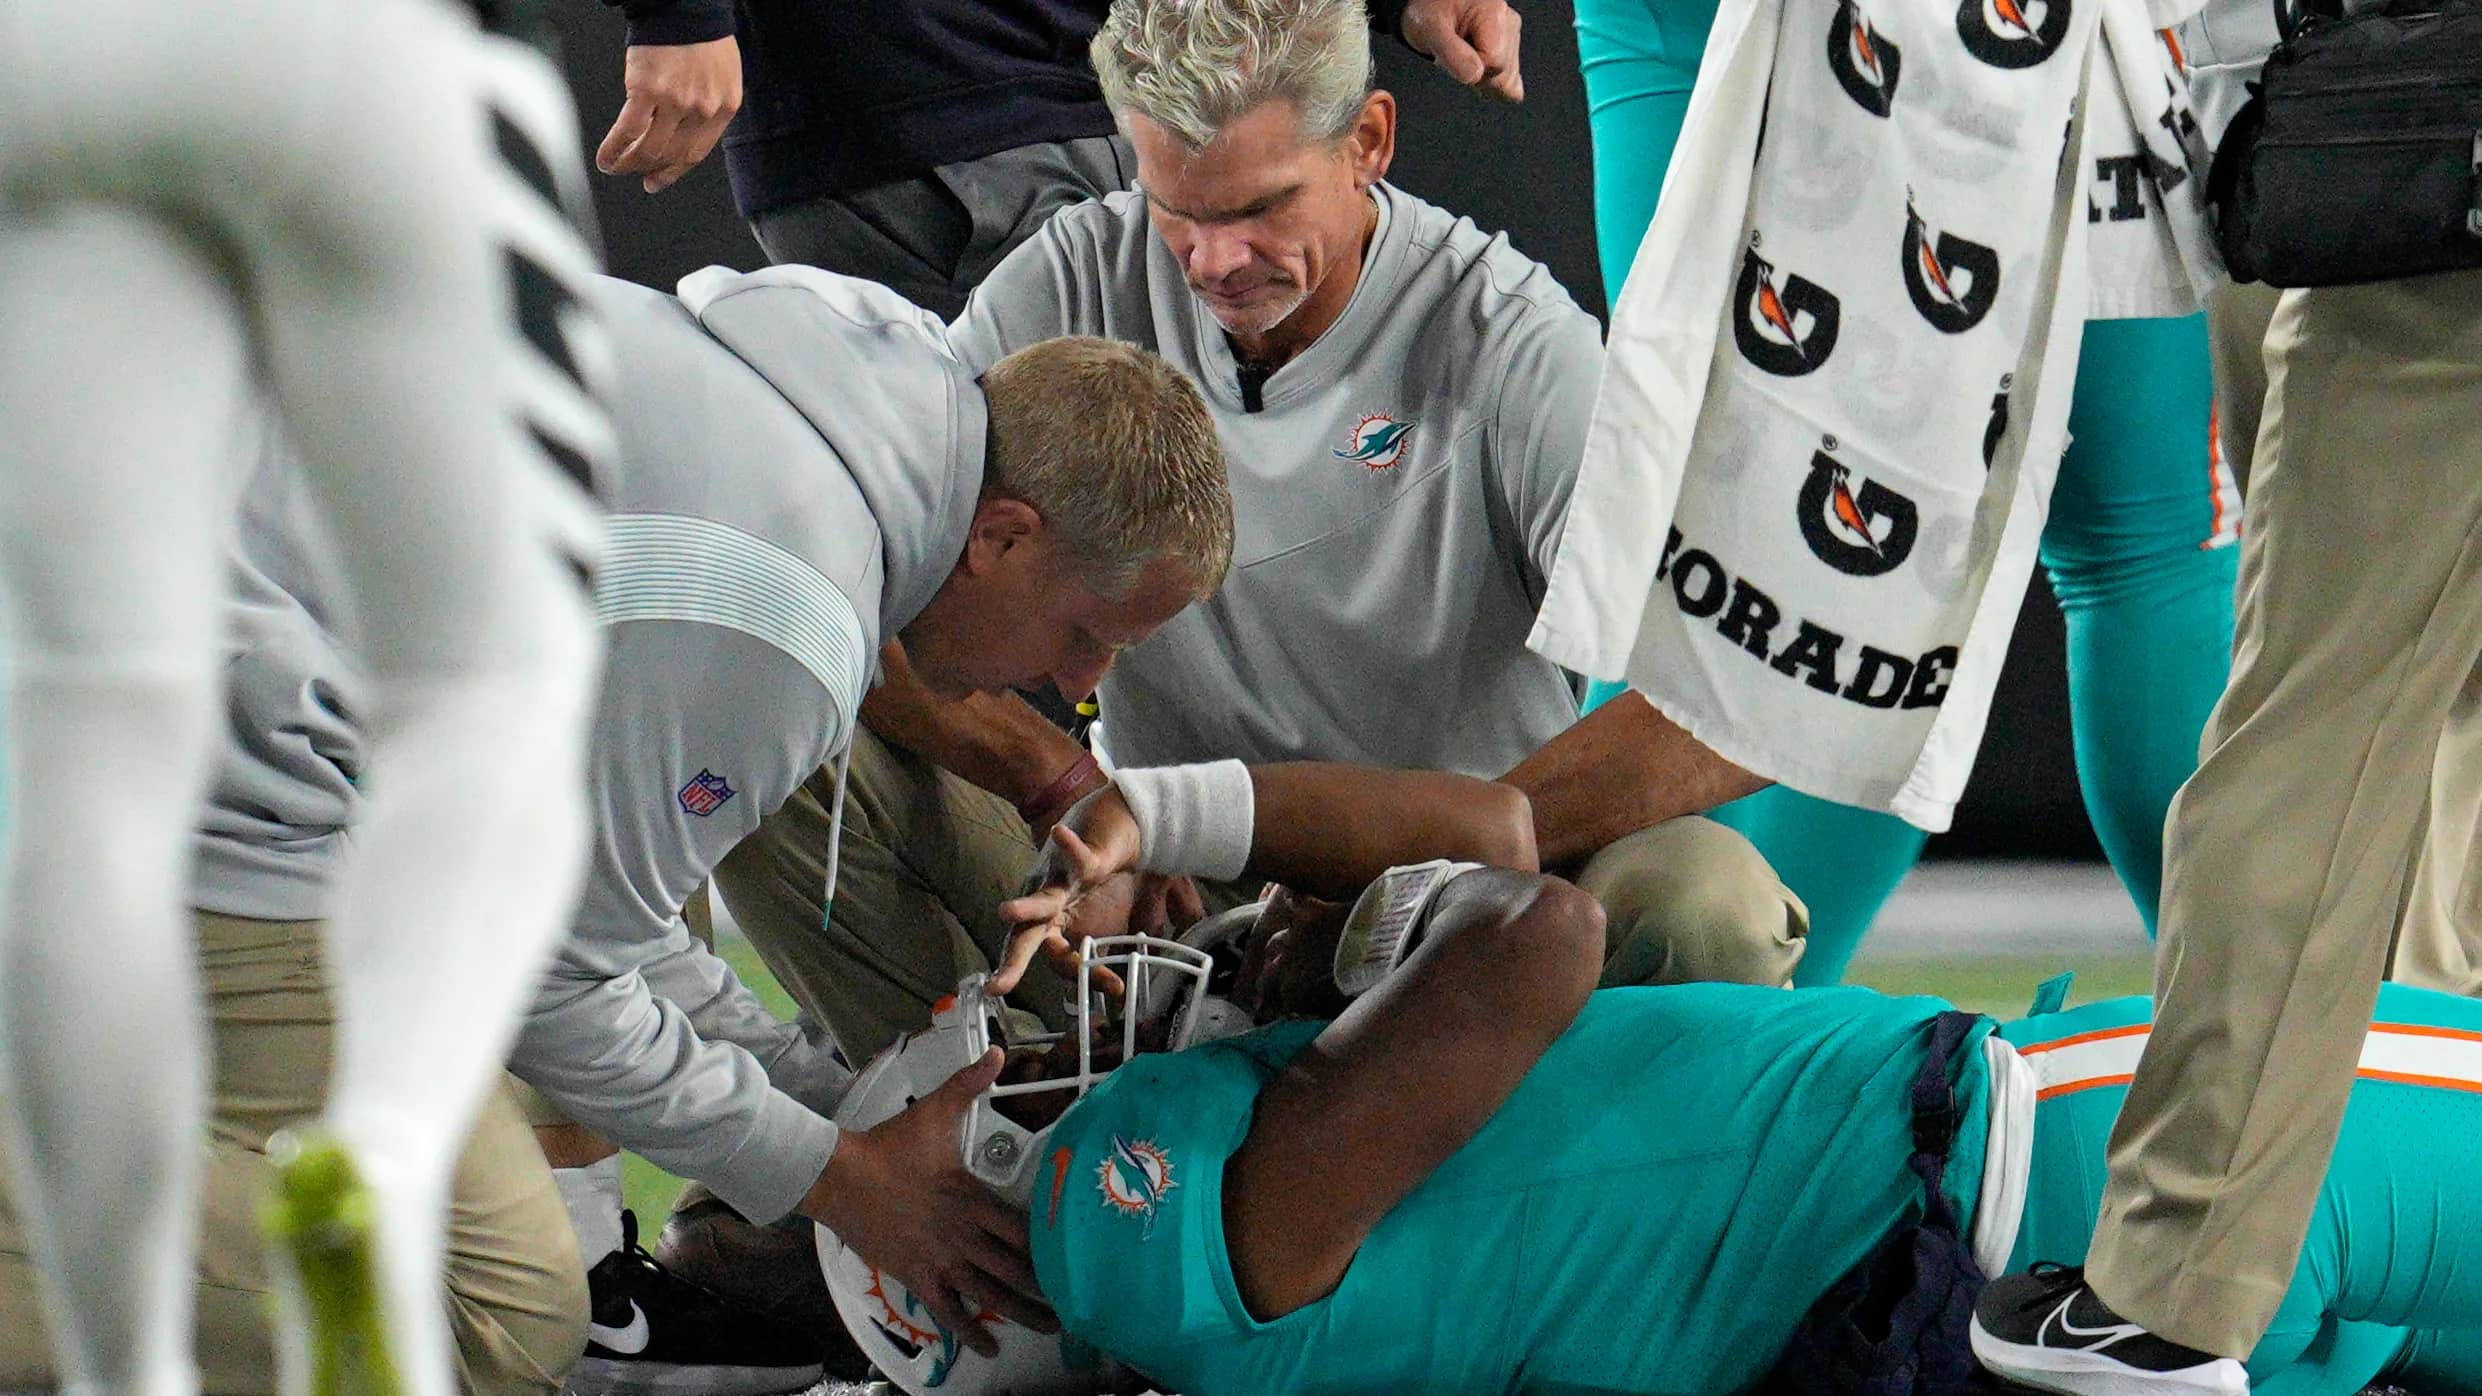 Quarterback Injury Raises Questions About NFL Concussion Protocols